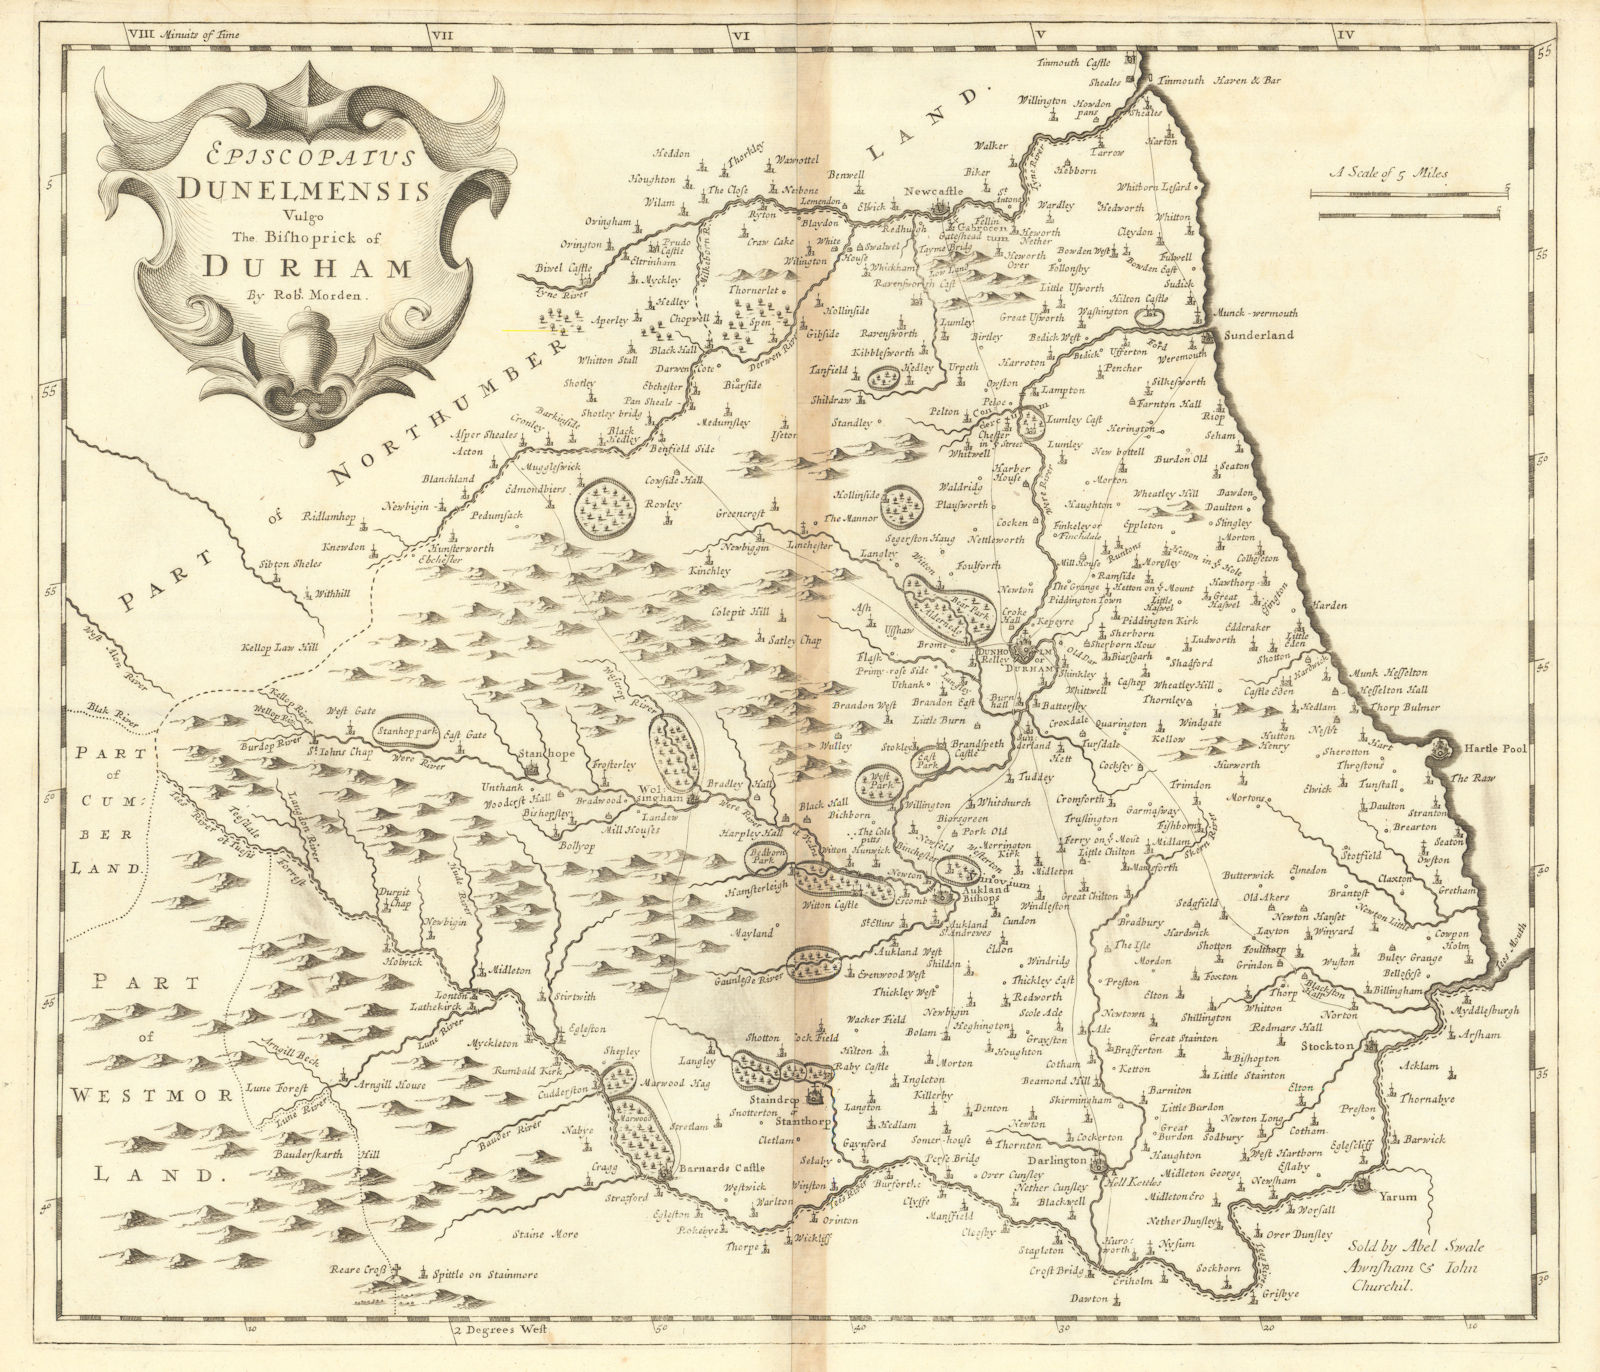 Bishopric of Durham. 'EPISCOPAIUS DUNELMENSIS' by ROBERT MORDEN 1695 old map